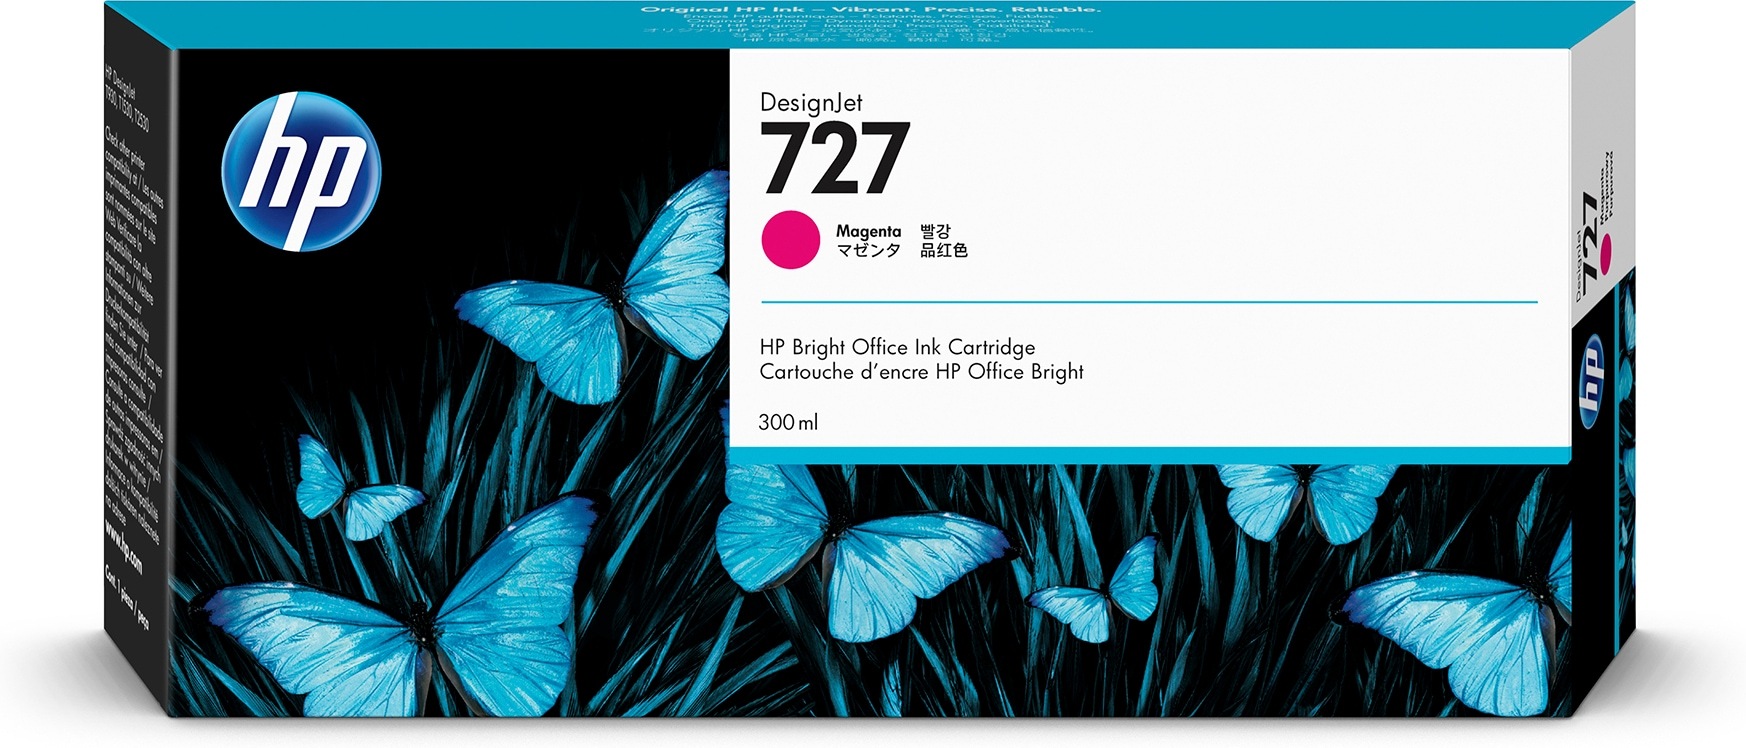 HP 727 magenta DesignJet inktcartridge, 300 ml single pack / magenta